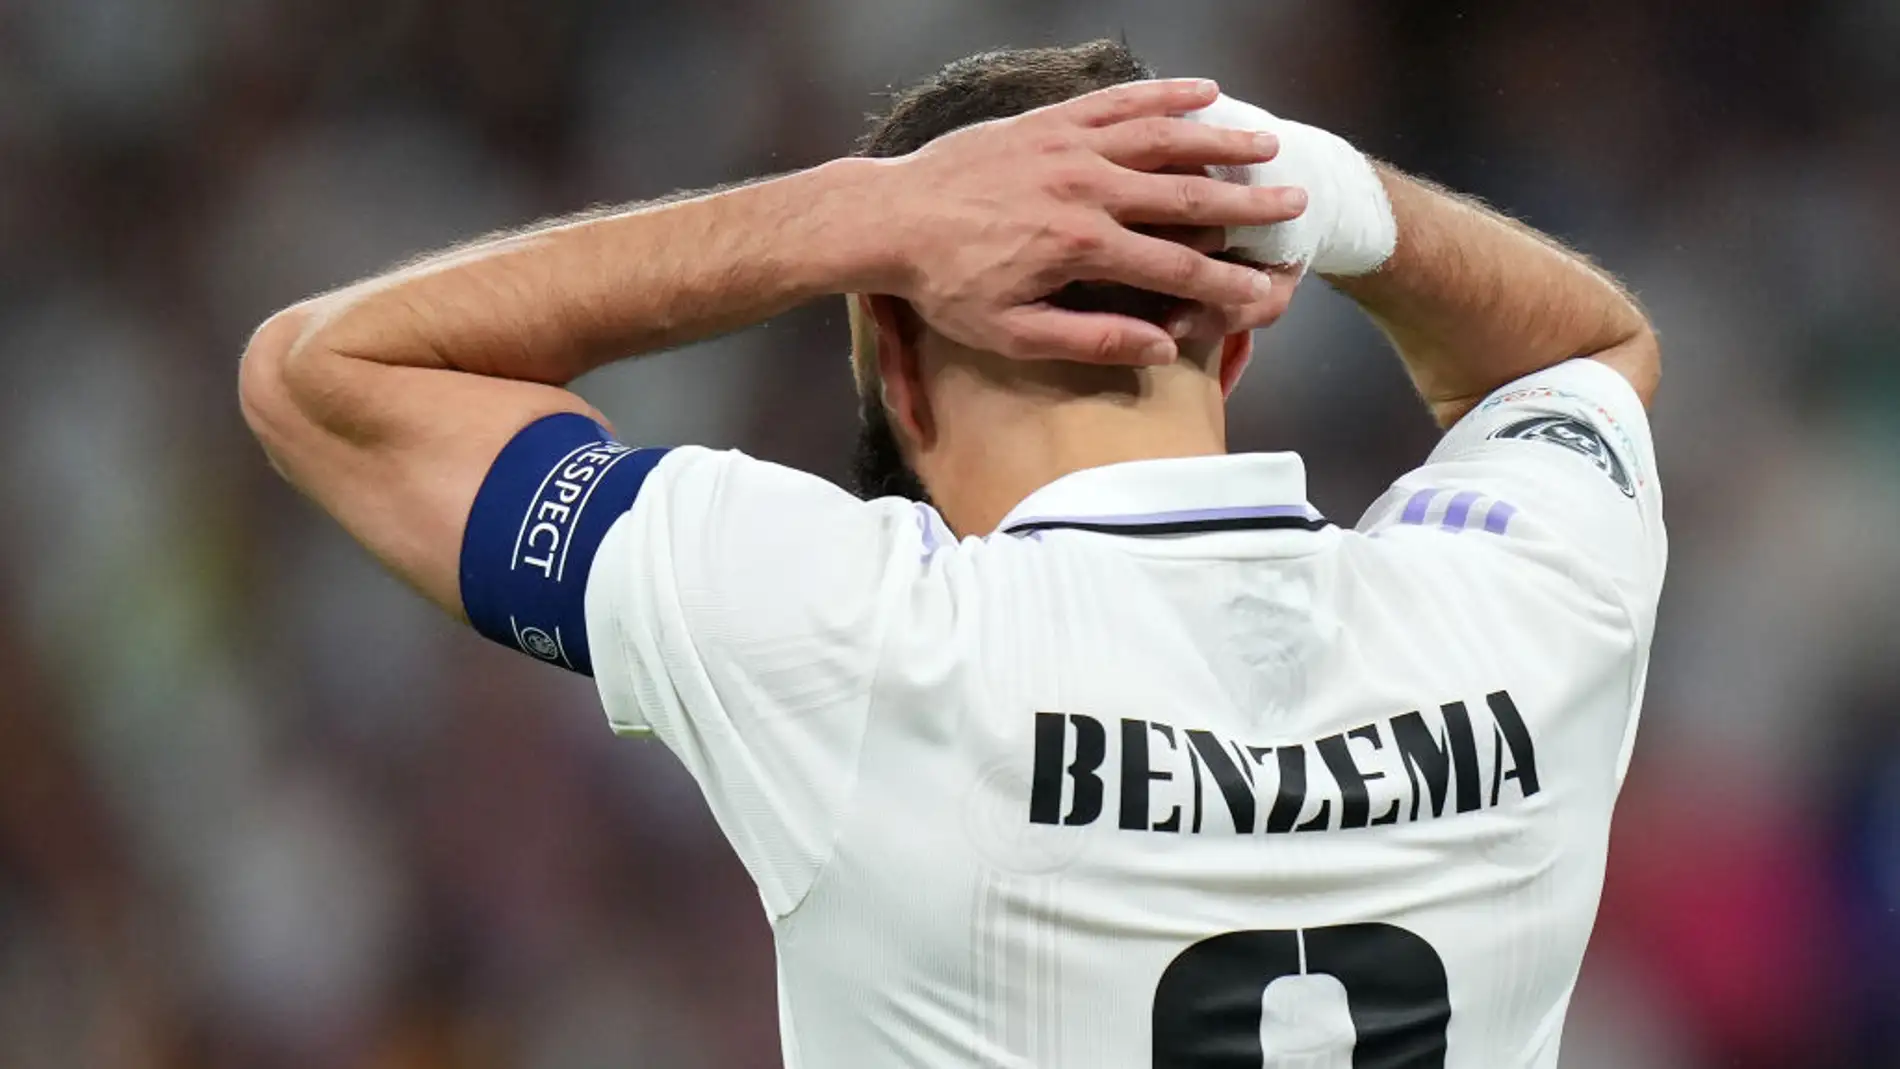 Benzemá no seguirá en el Real Madrid